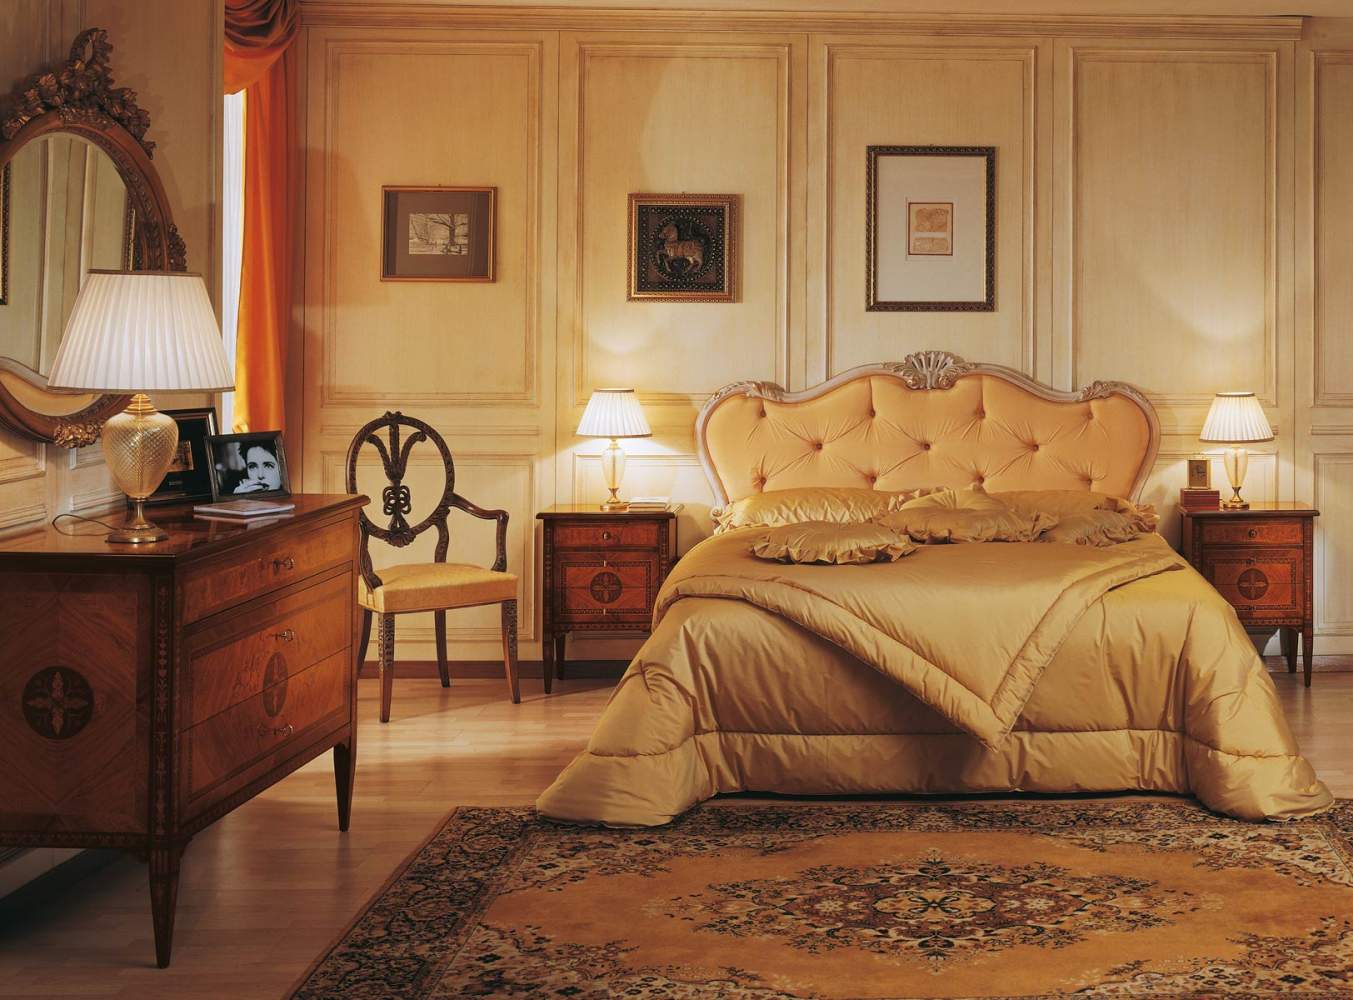 Camera da letto classica di lusso I Maggiolini, letto capitonné, comò e comodini in noce e ulivo